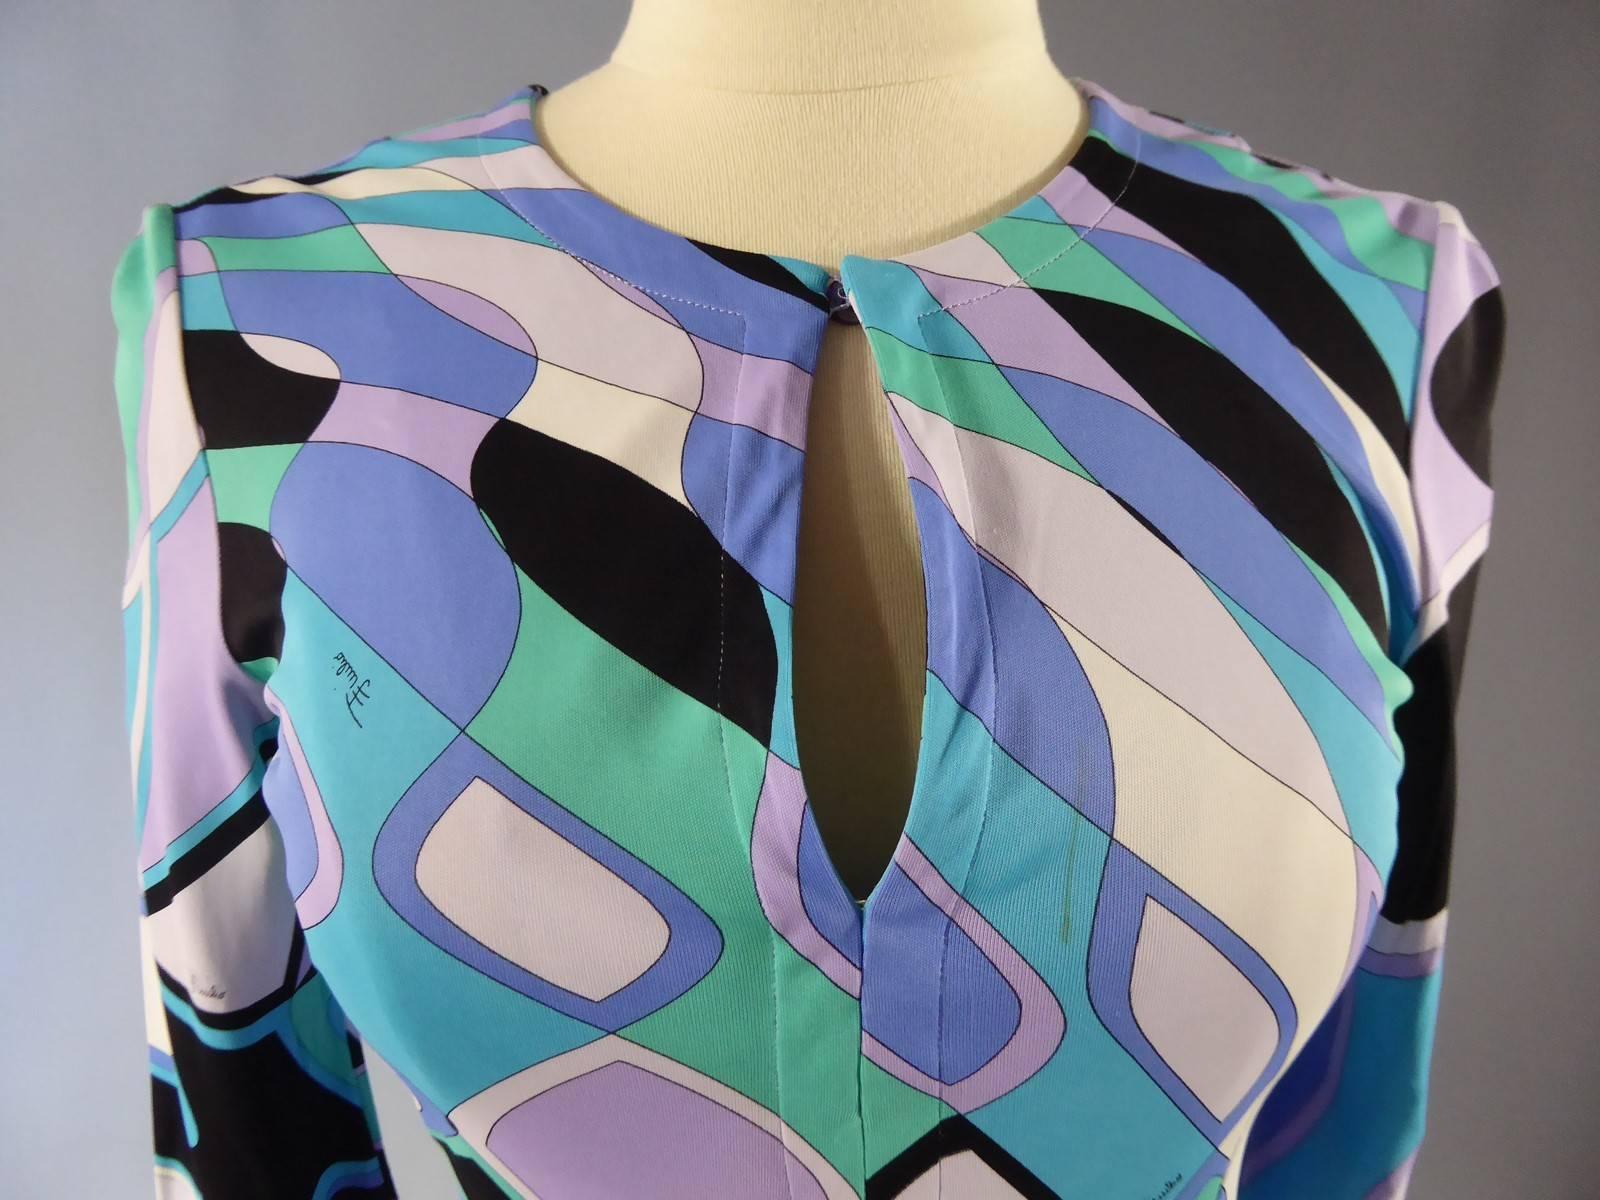 Circa 1980
Italie
Robe Emilio Pucci à motifs graphiques en lilas, vert clair, bleu turquoise, rose pâle, noir et crème. Le motif et la coupe de la robe sont emblématiques de l'art et du style psychédéliques des années 1970. Convient parfaitement à